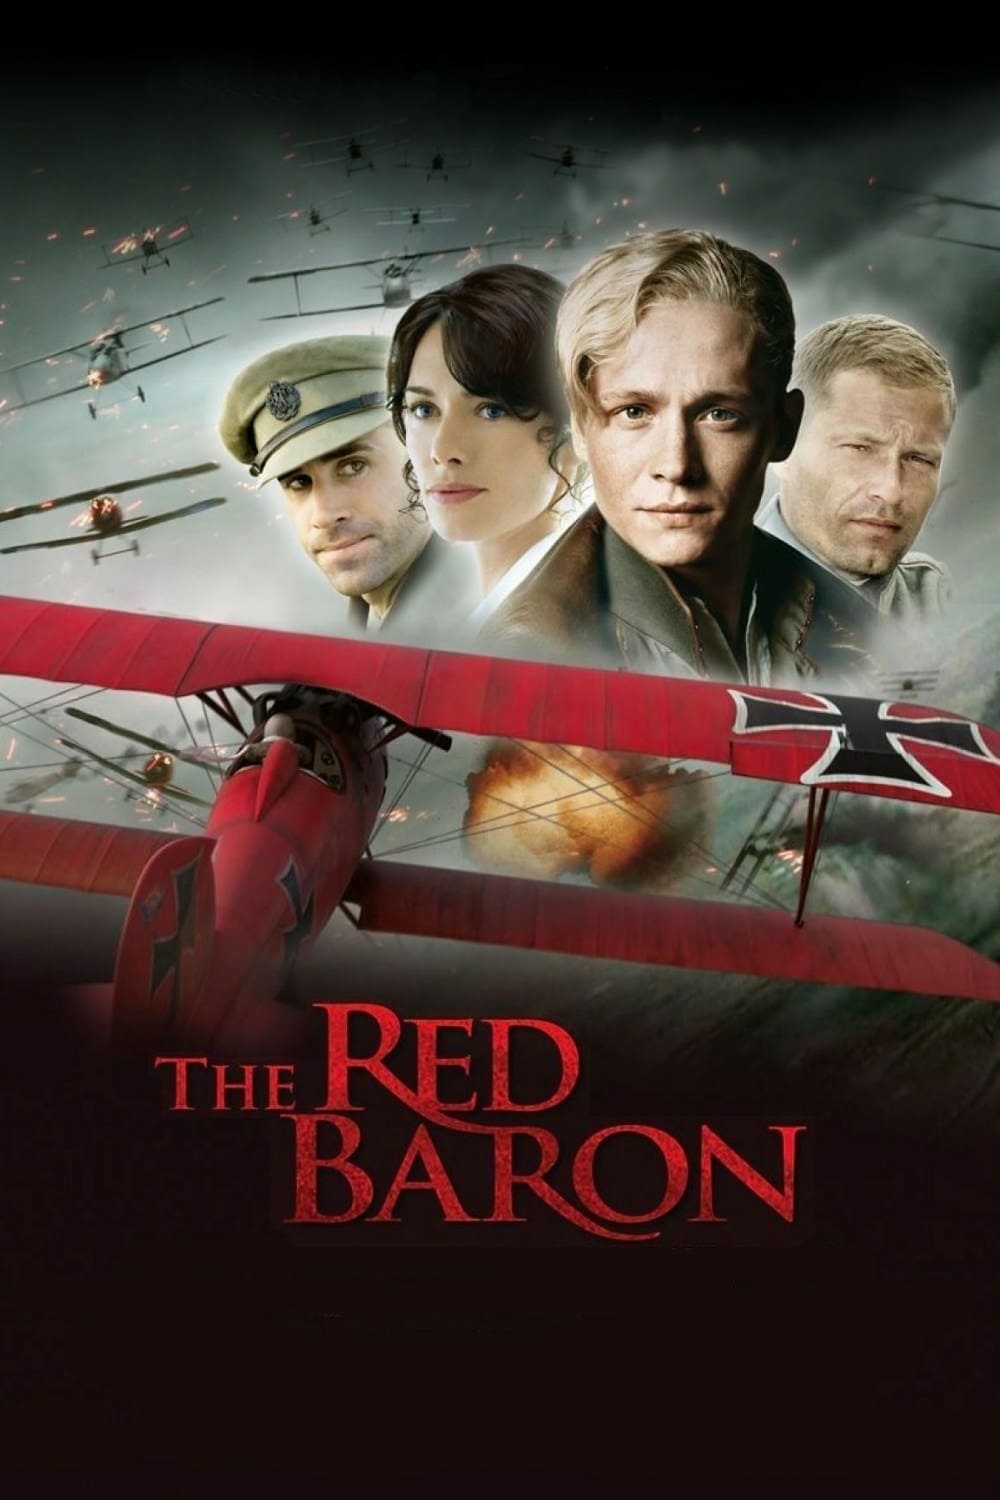 The Red Baron (El barón rojo) (2008)